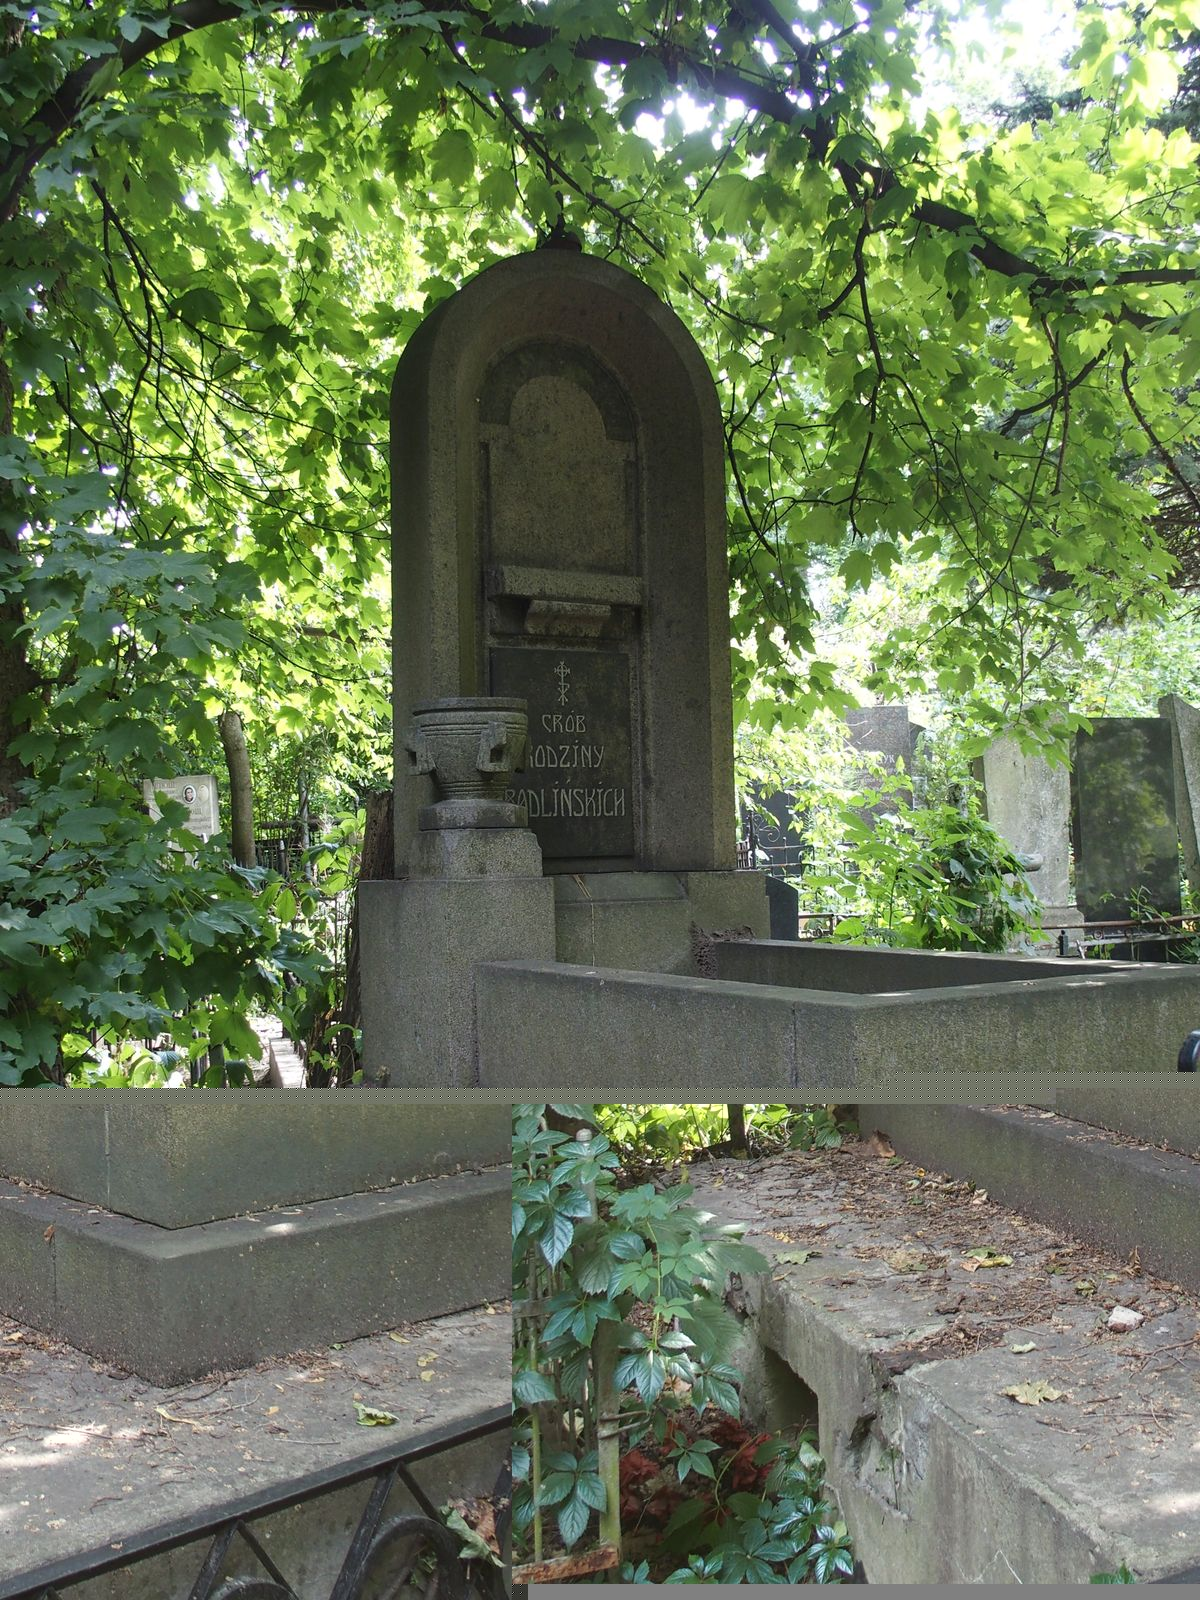 Tomb of the Radlinski family, Baykova cemetery in Kiev, as of 2021